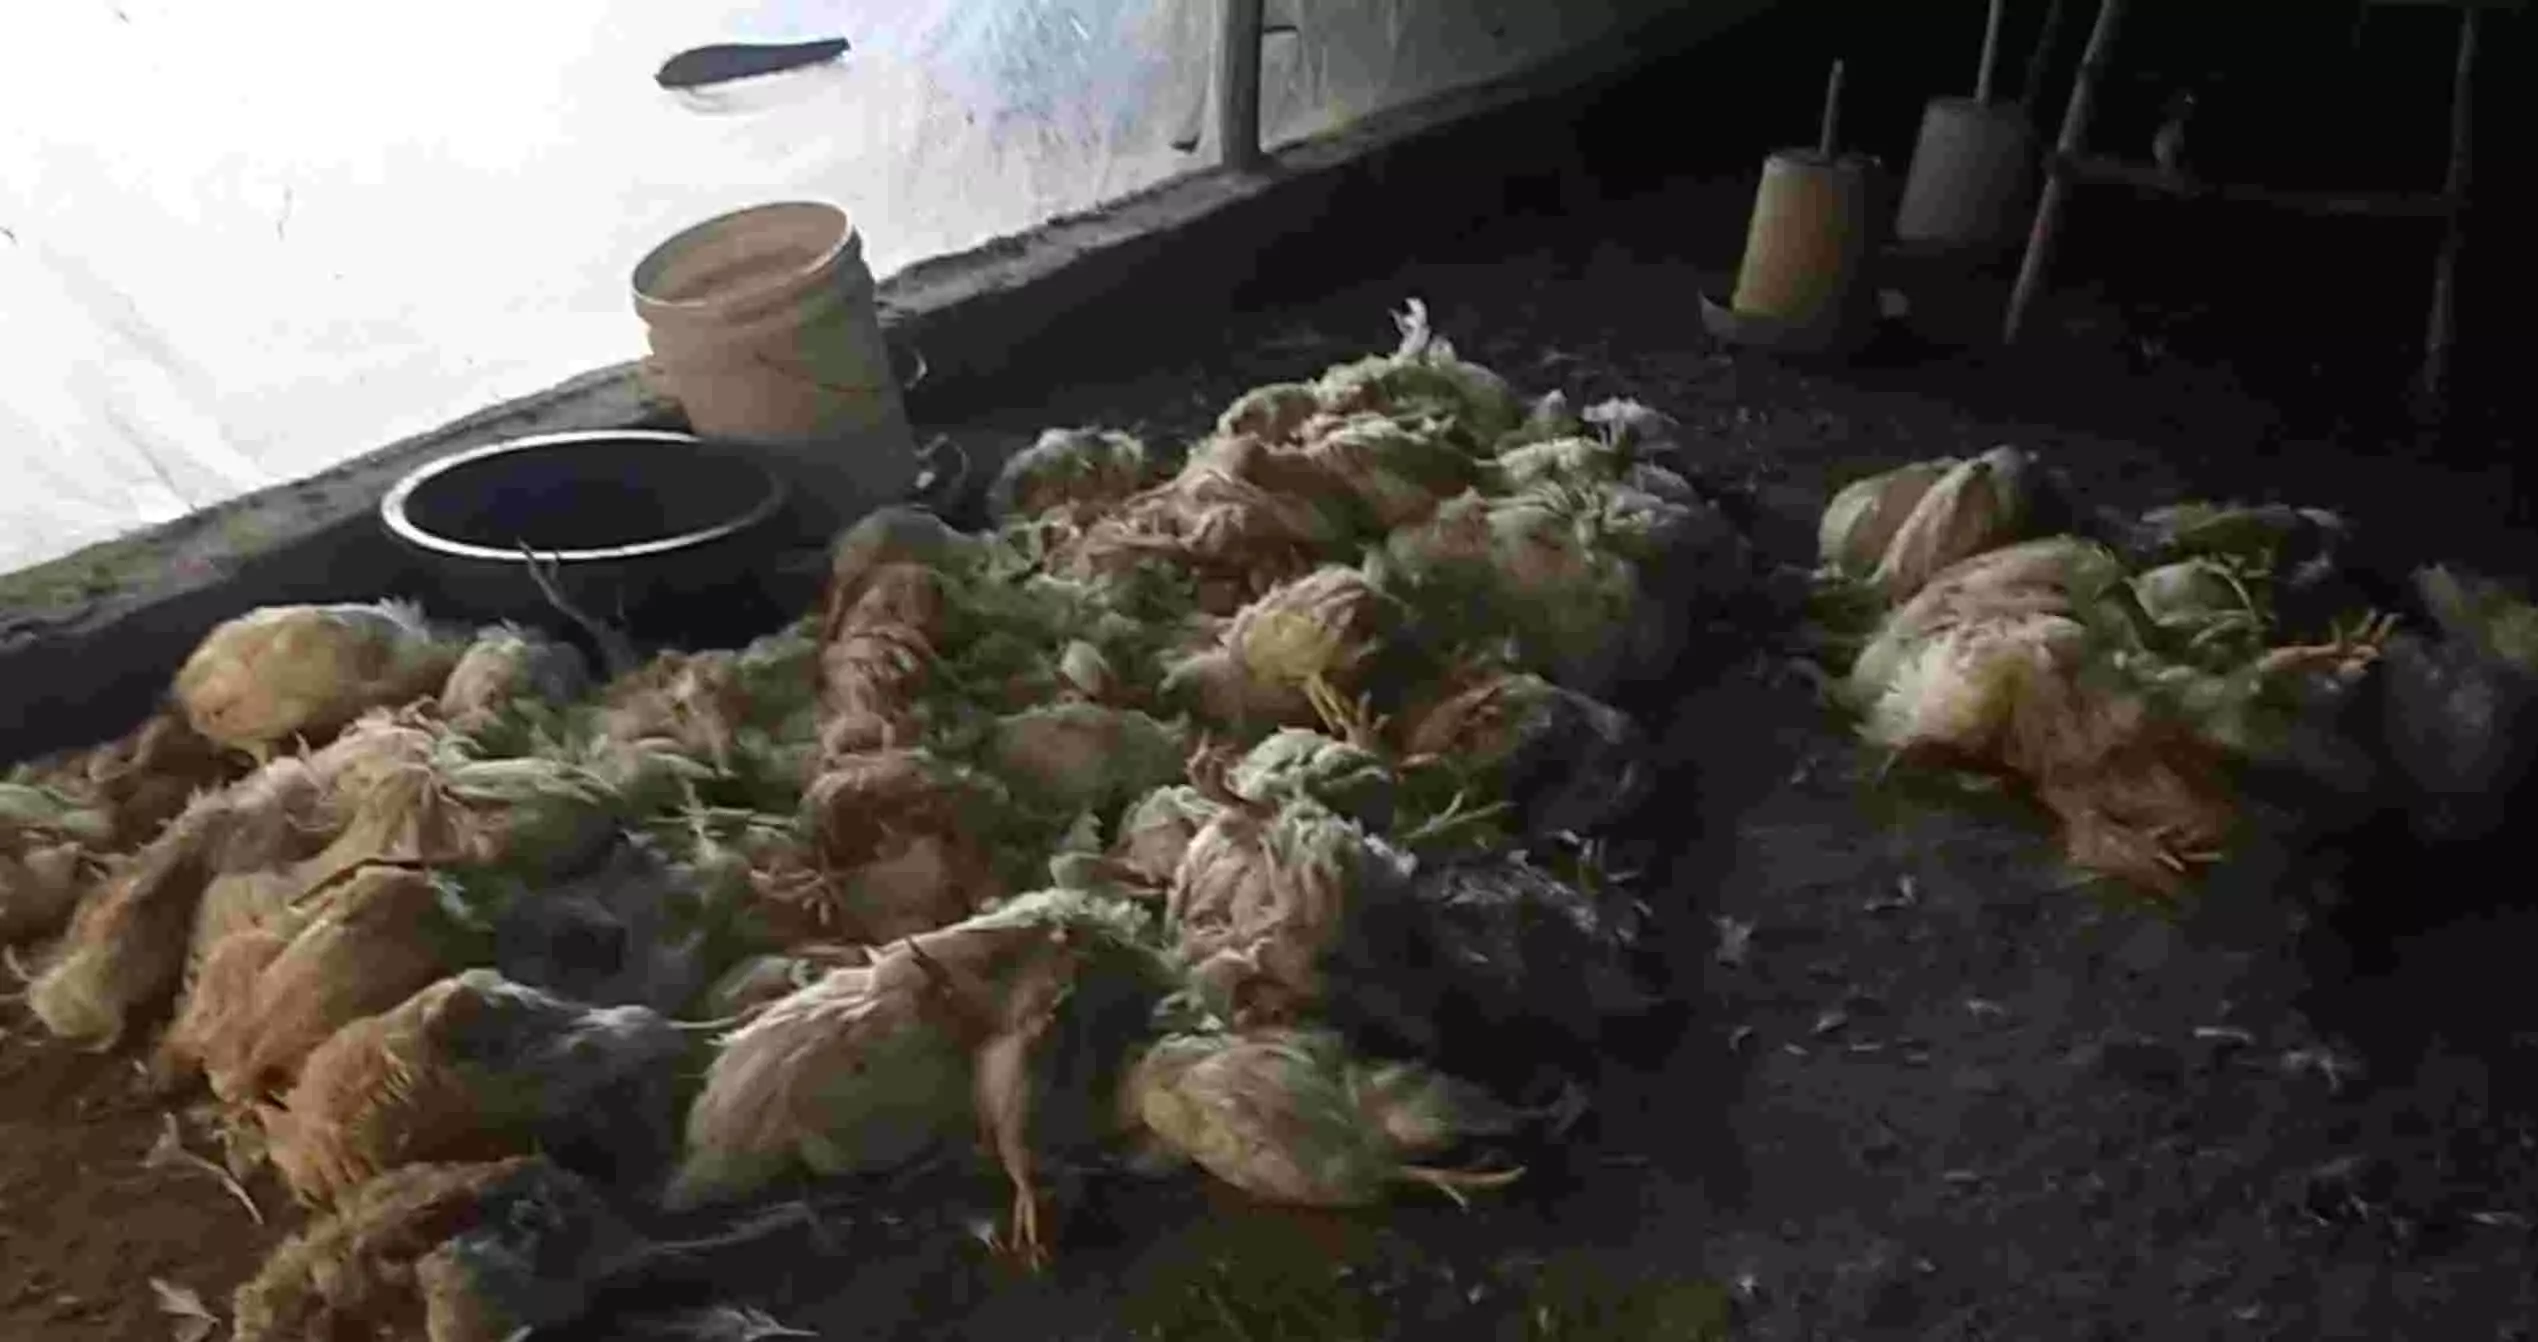 बिजनौर में वर्ड फ्लू के दौरान भारी लापरवाही, मुर्गी फार्म स्वामी की वजह से जा सकती है हजारों लोंगों की जान